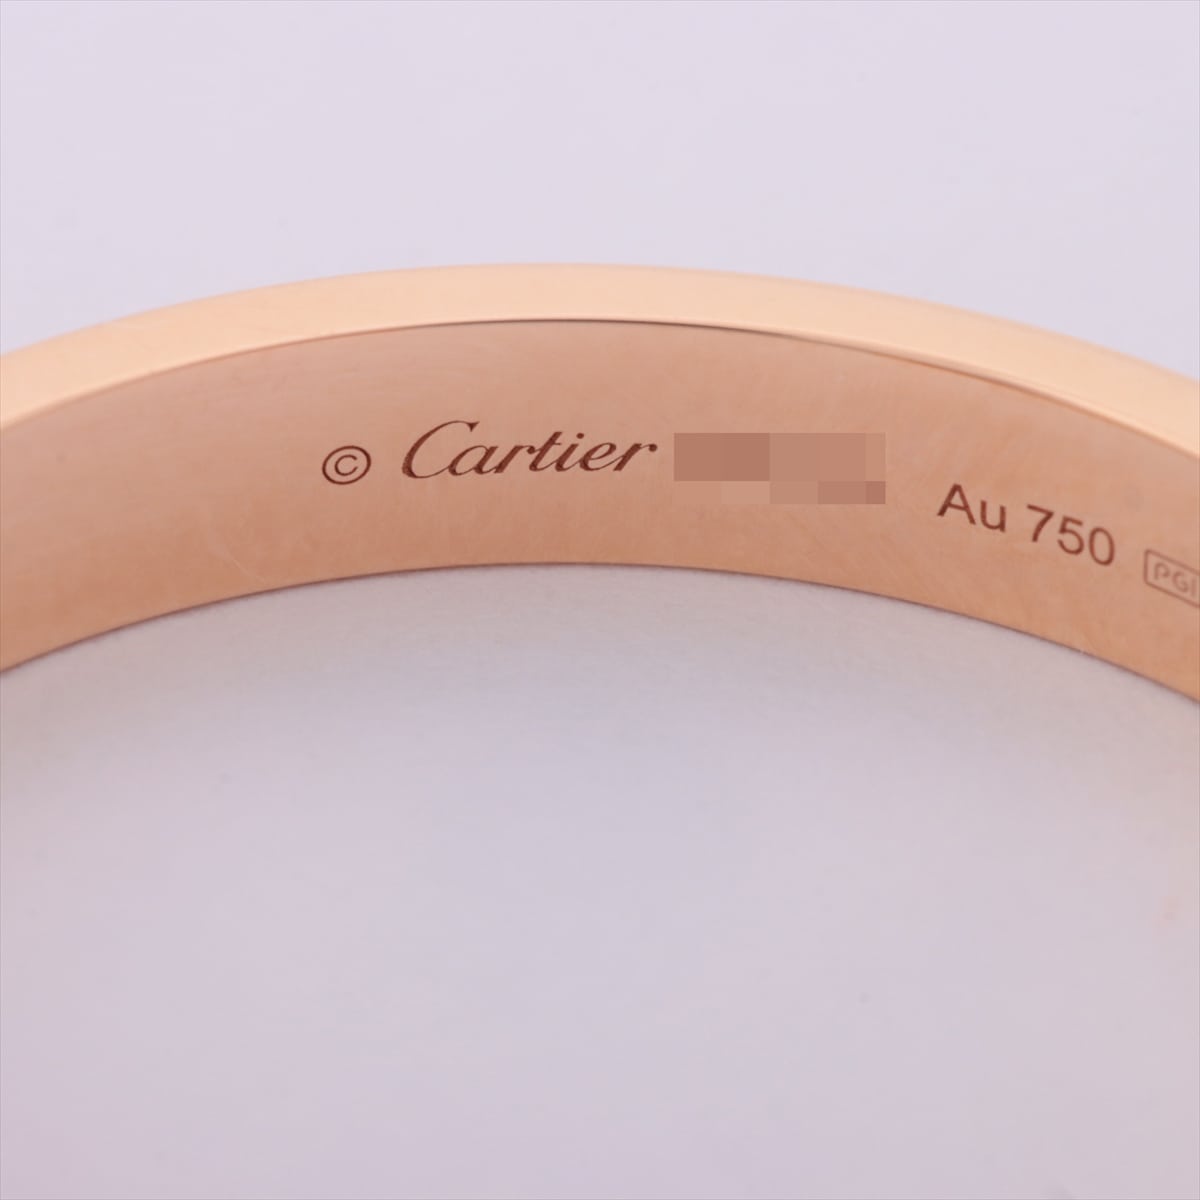 Cartier Love Pavé diamond Piercing jewelry 750(PG) 8.9g